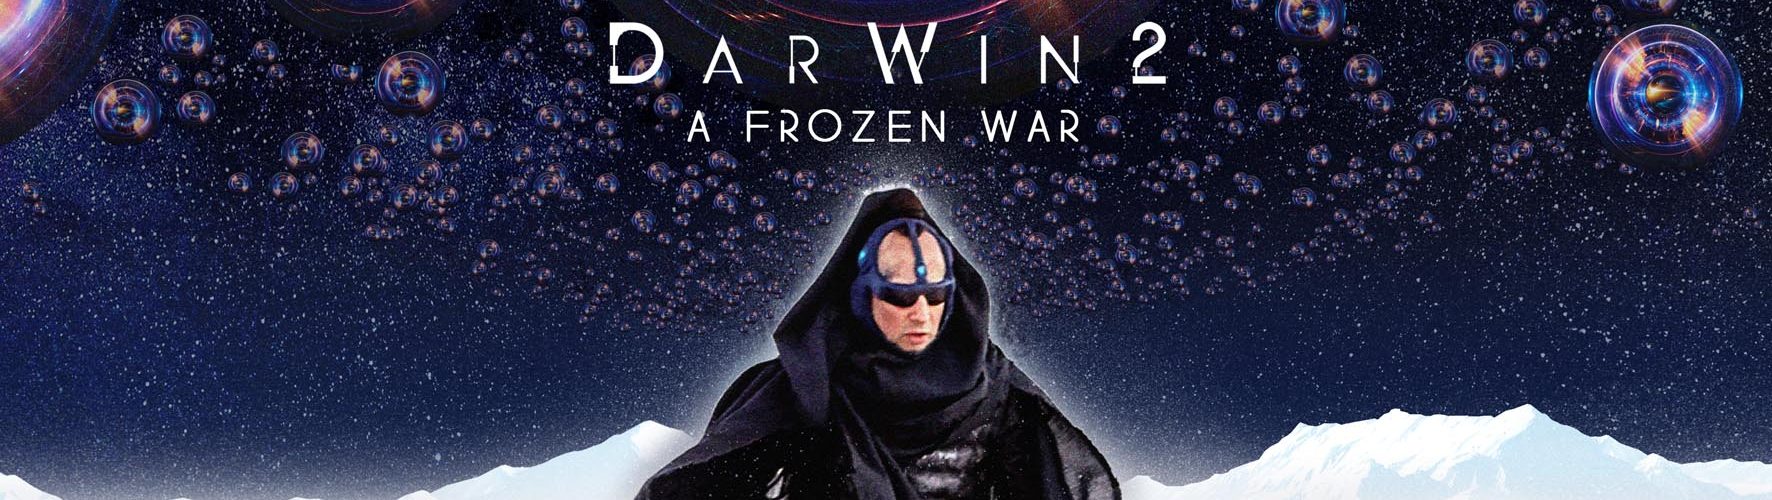 DarWin 2 – A Frozen War